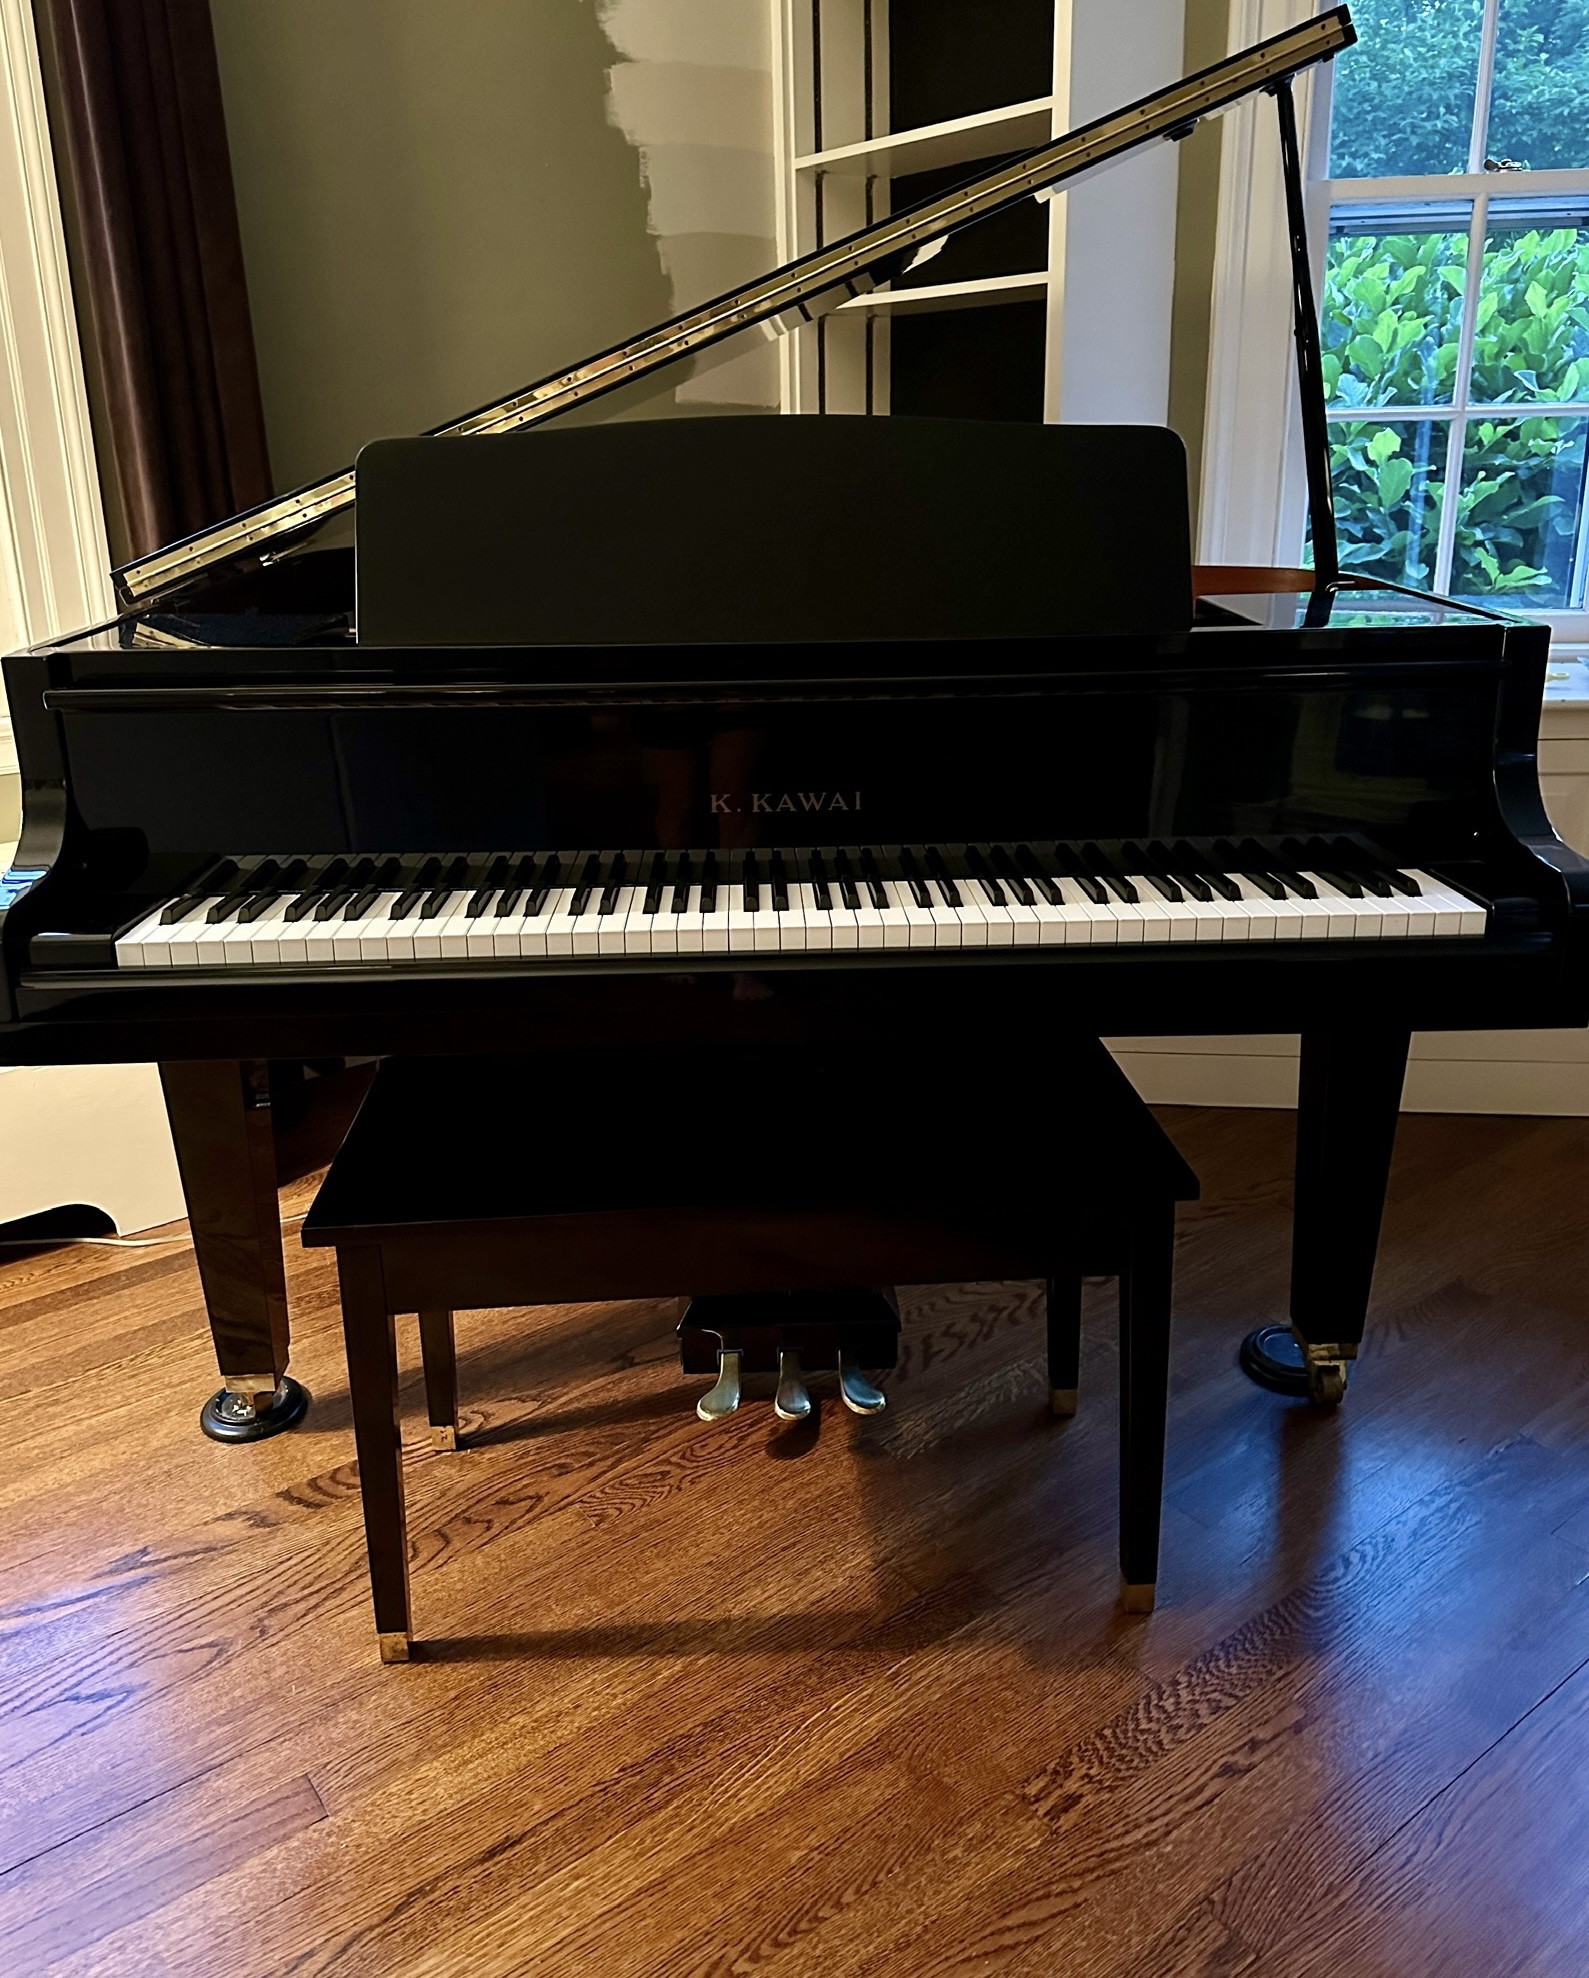 Kawai Baby Grand Piano & Matching Bench - Ohio